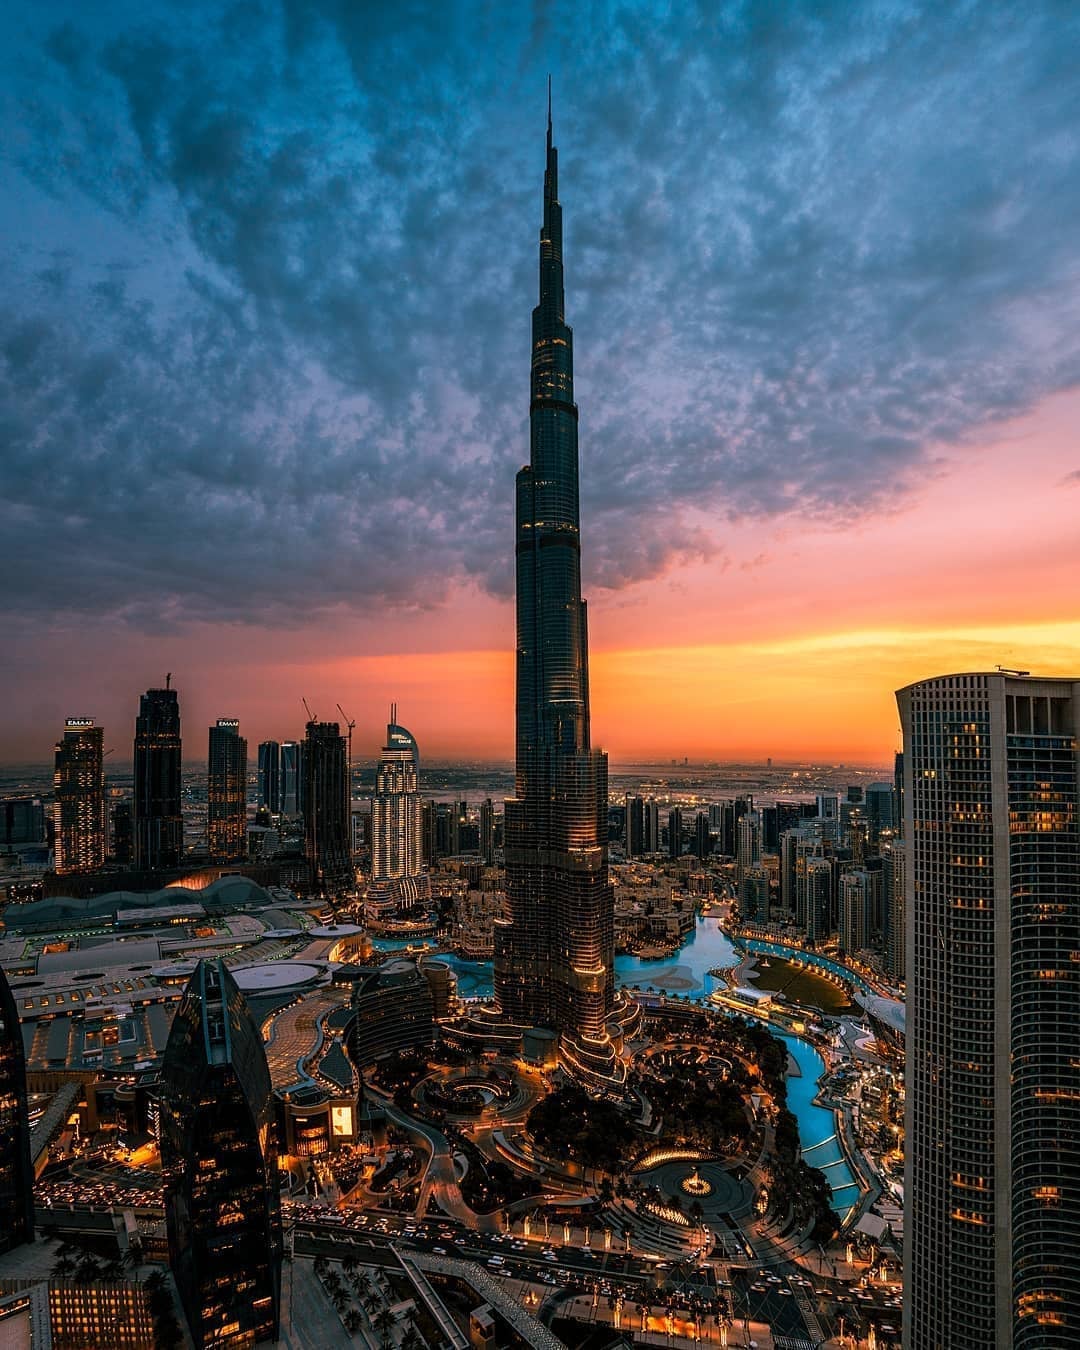 اكبر برج في العالم, برج خليفة بدبي - روح اطفال